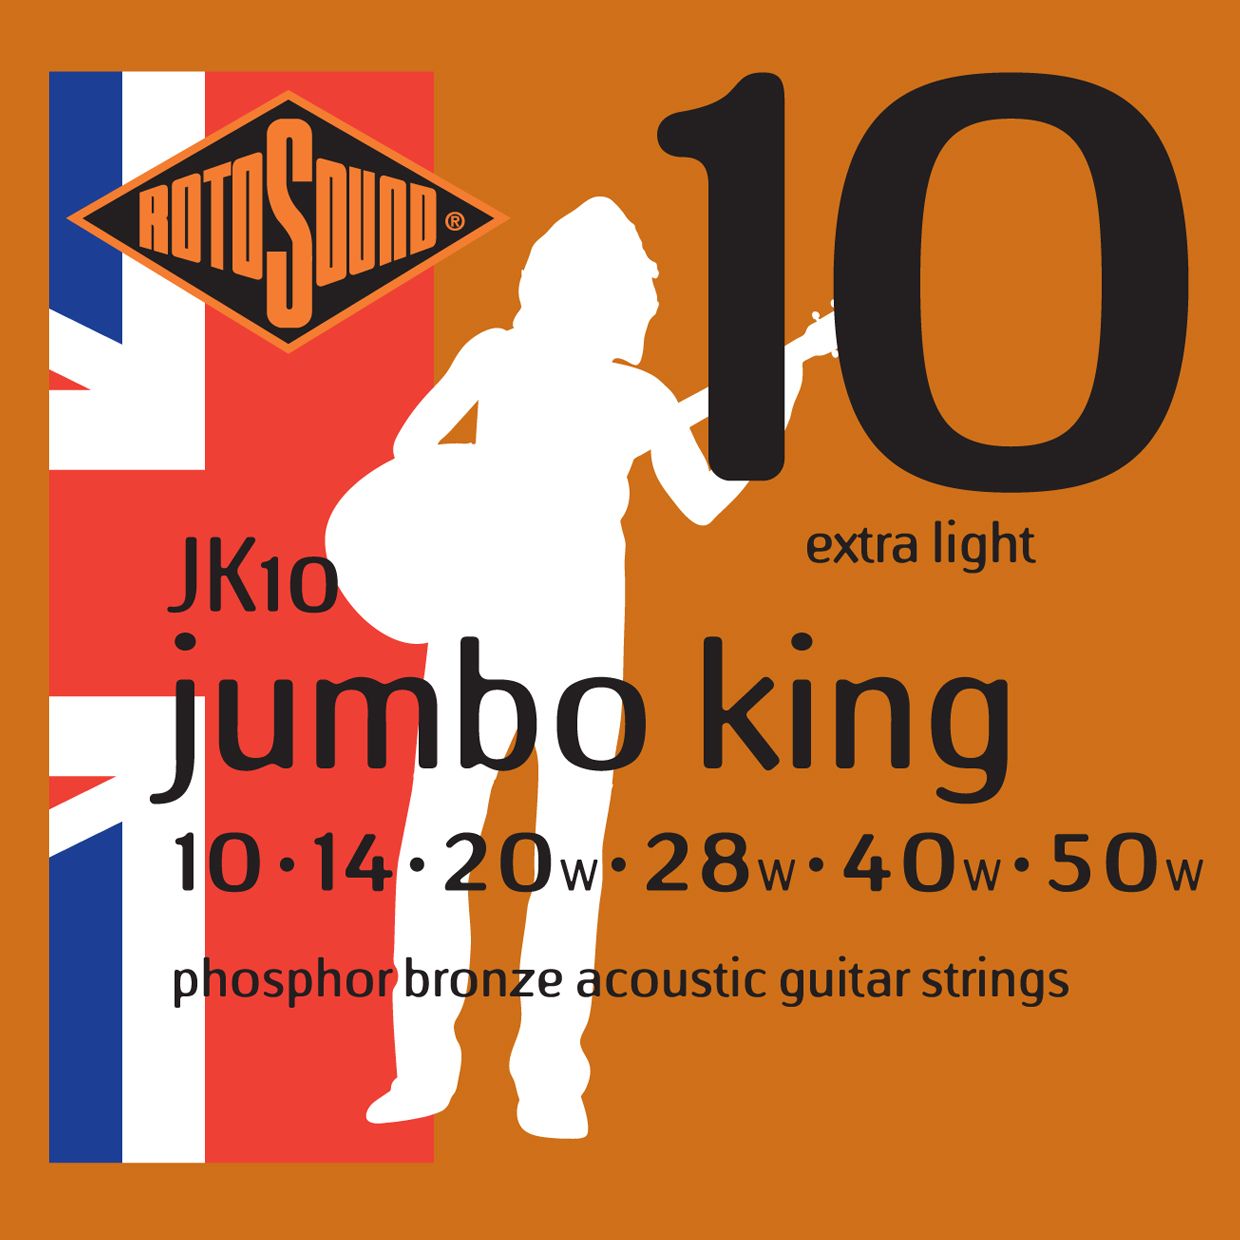 Детальная картинка товара ROTOSOUND JK10 STRINGS PHOSPHOR BRONZE в магазине Музыкальный Мир